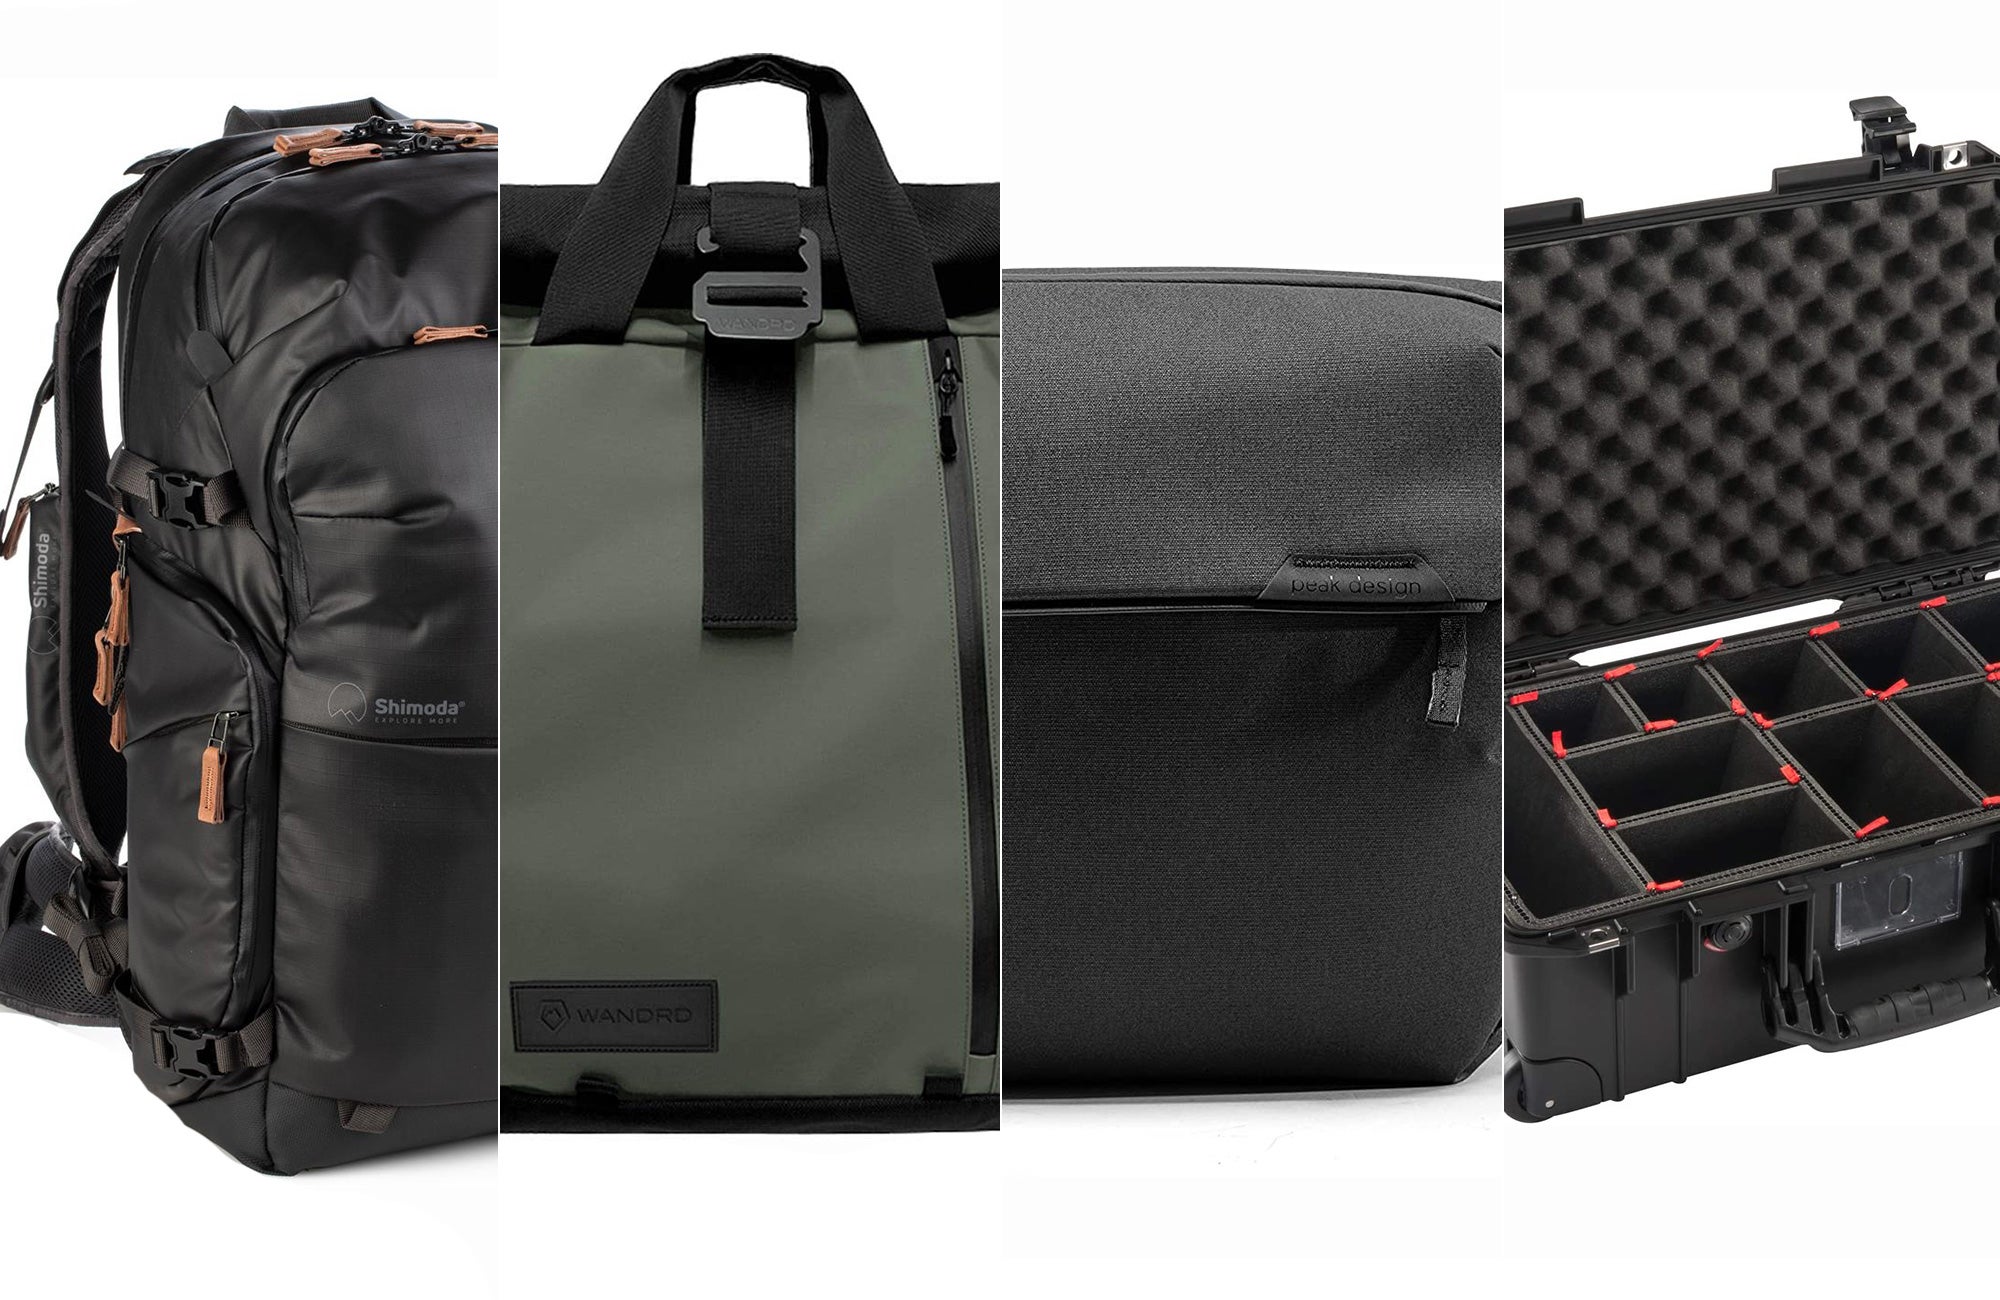 LIXBB Outdoor Product/Fashion Bag Camera Bag Waterproof Shoulder Travel Photography Bag Casual SLR Camera Bag Camera Backpack 